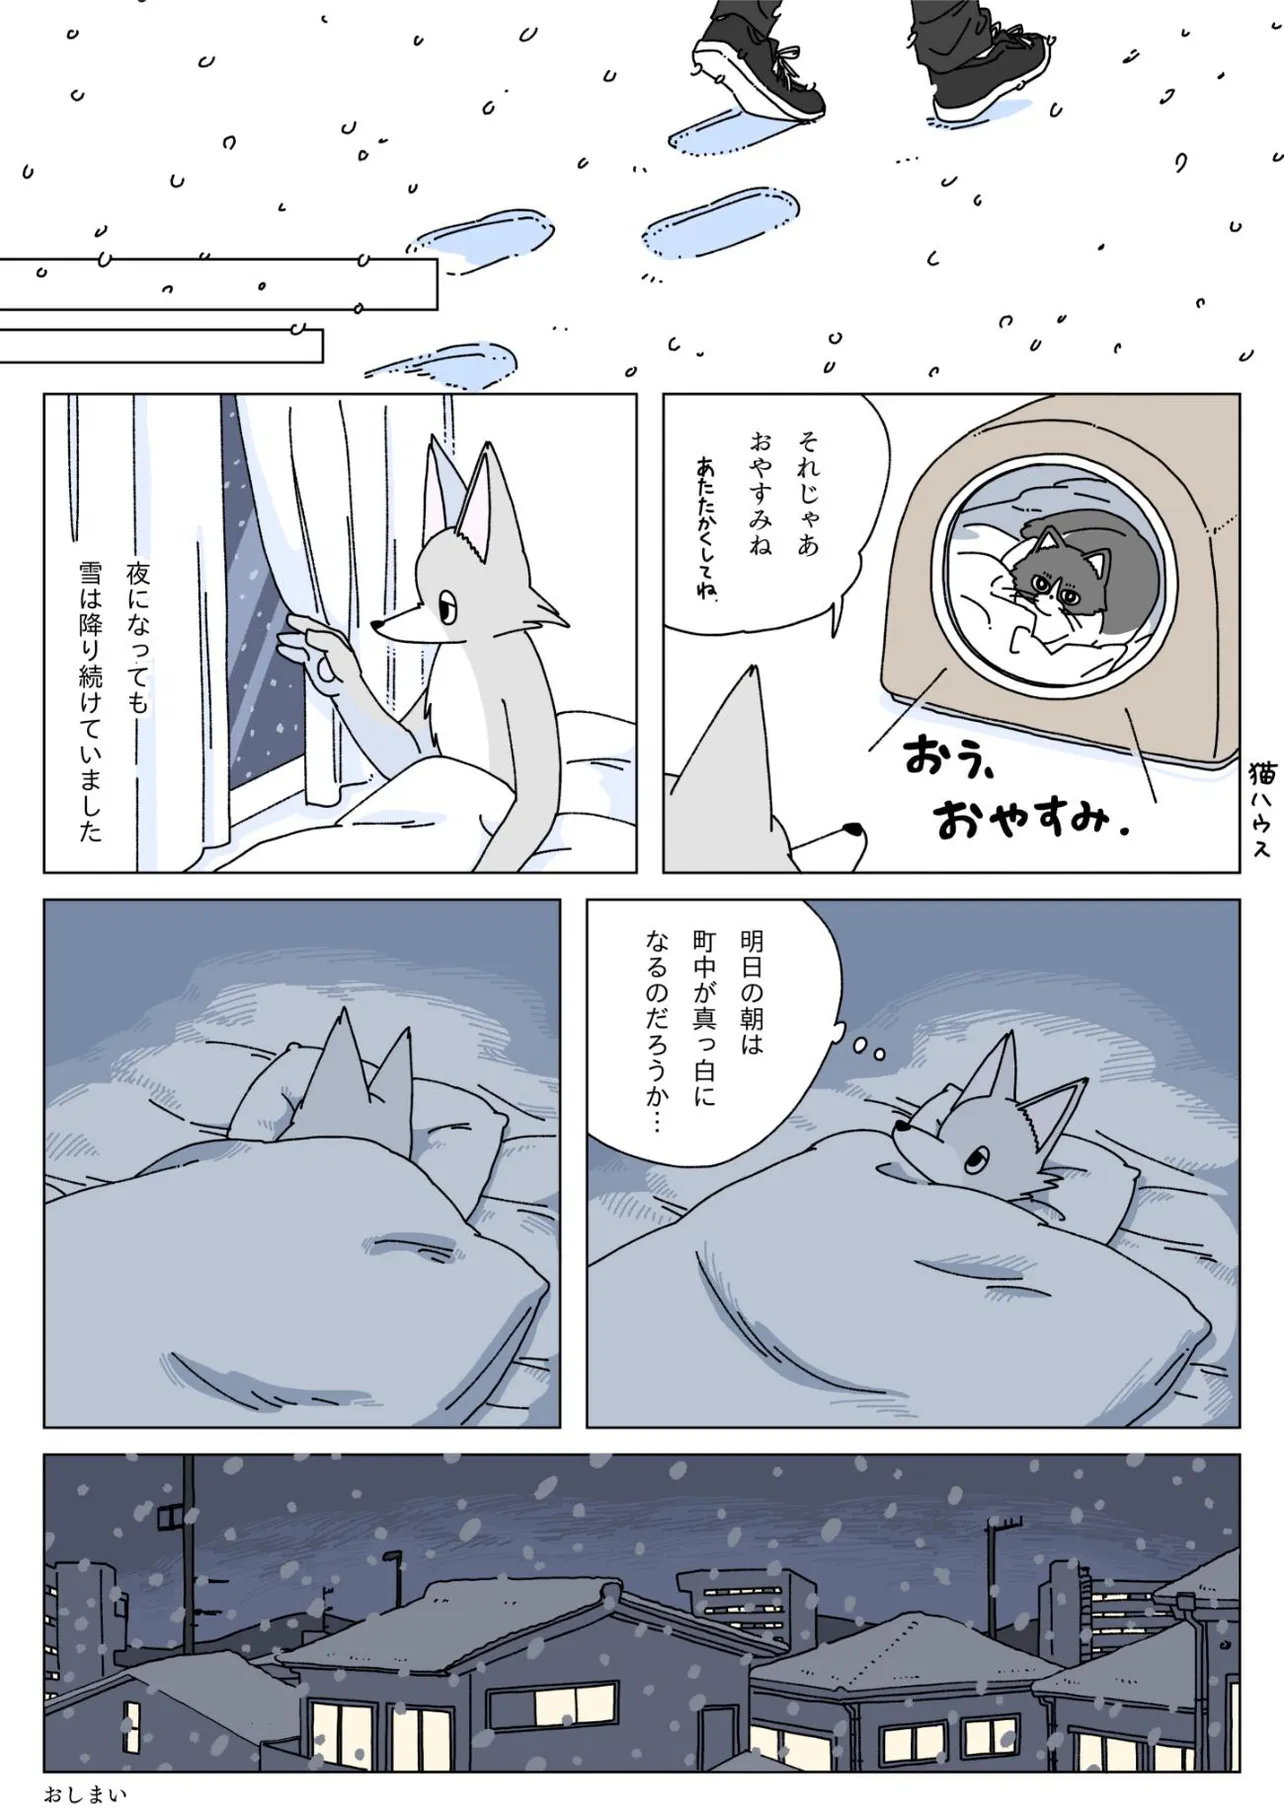 『大雪の日に豆腐を食べる話』(12／12)